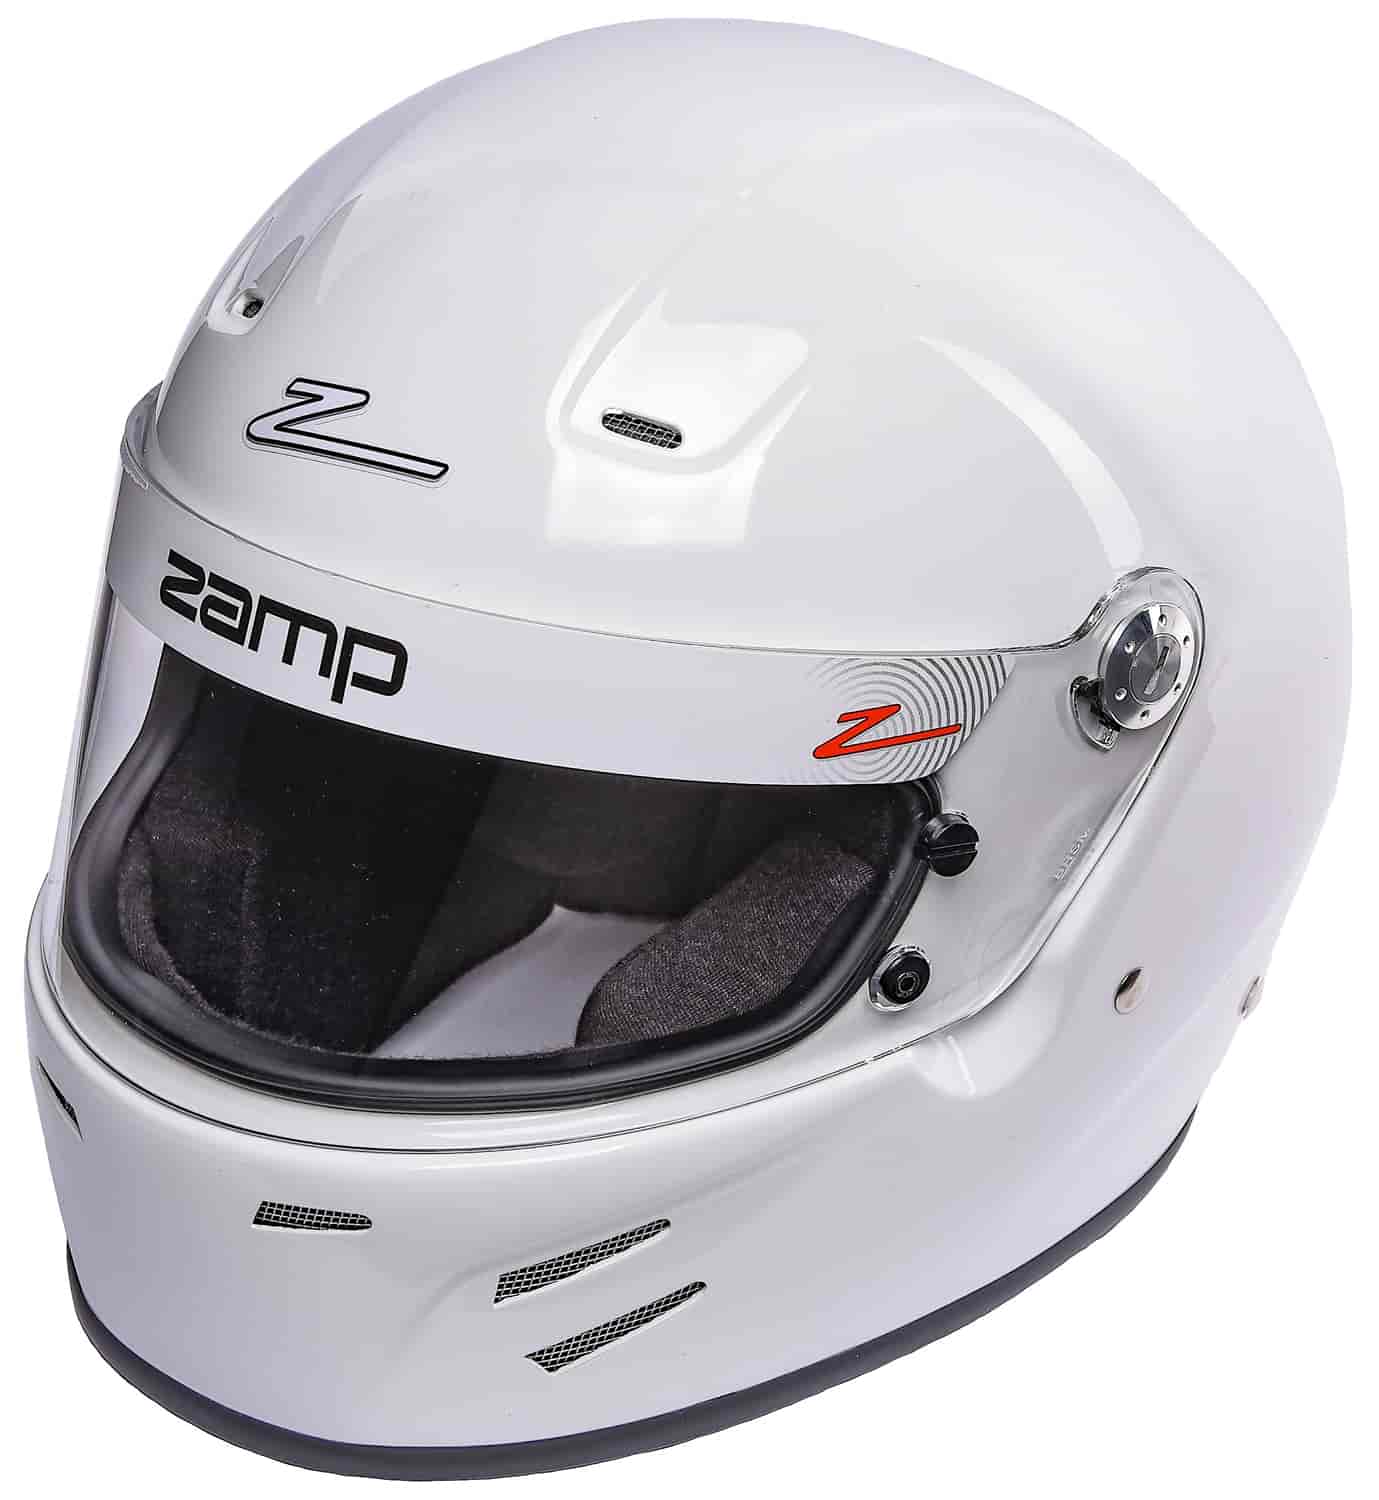 FSA-3 Medium Full Face Racing Helmet